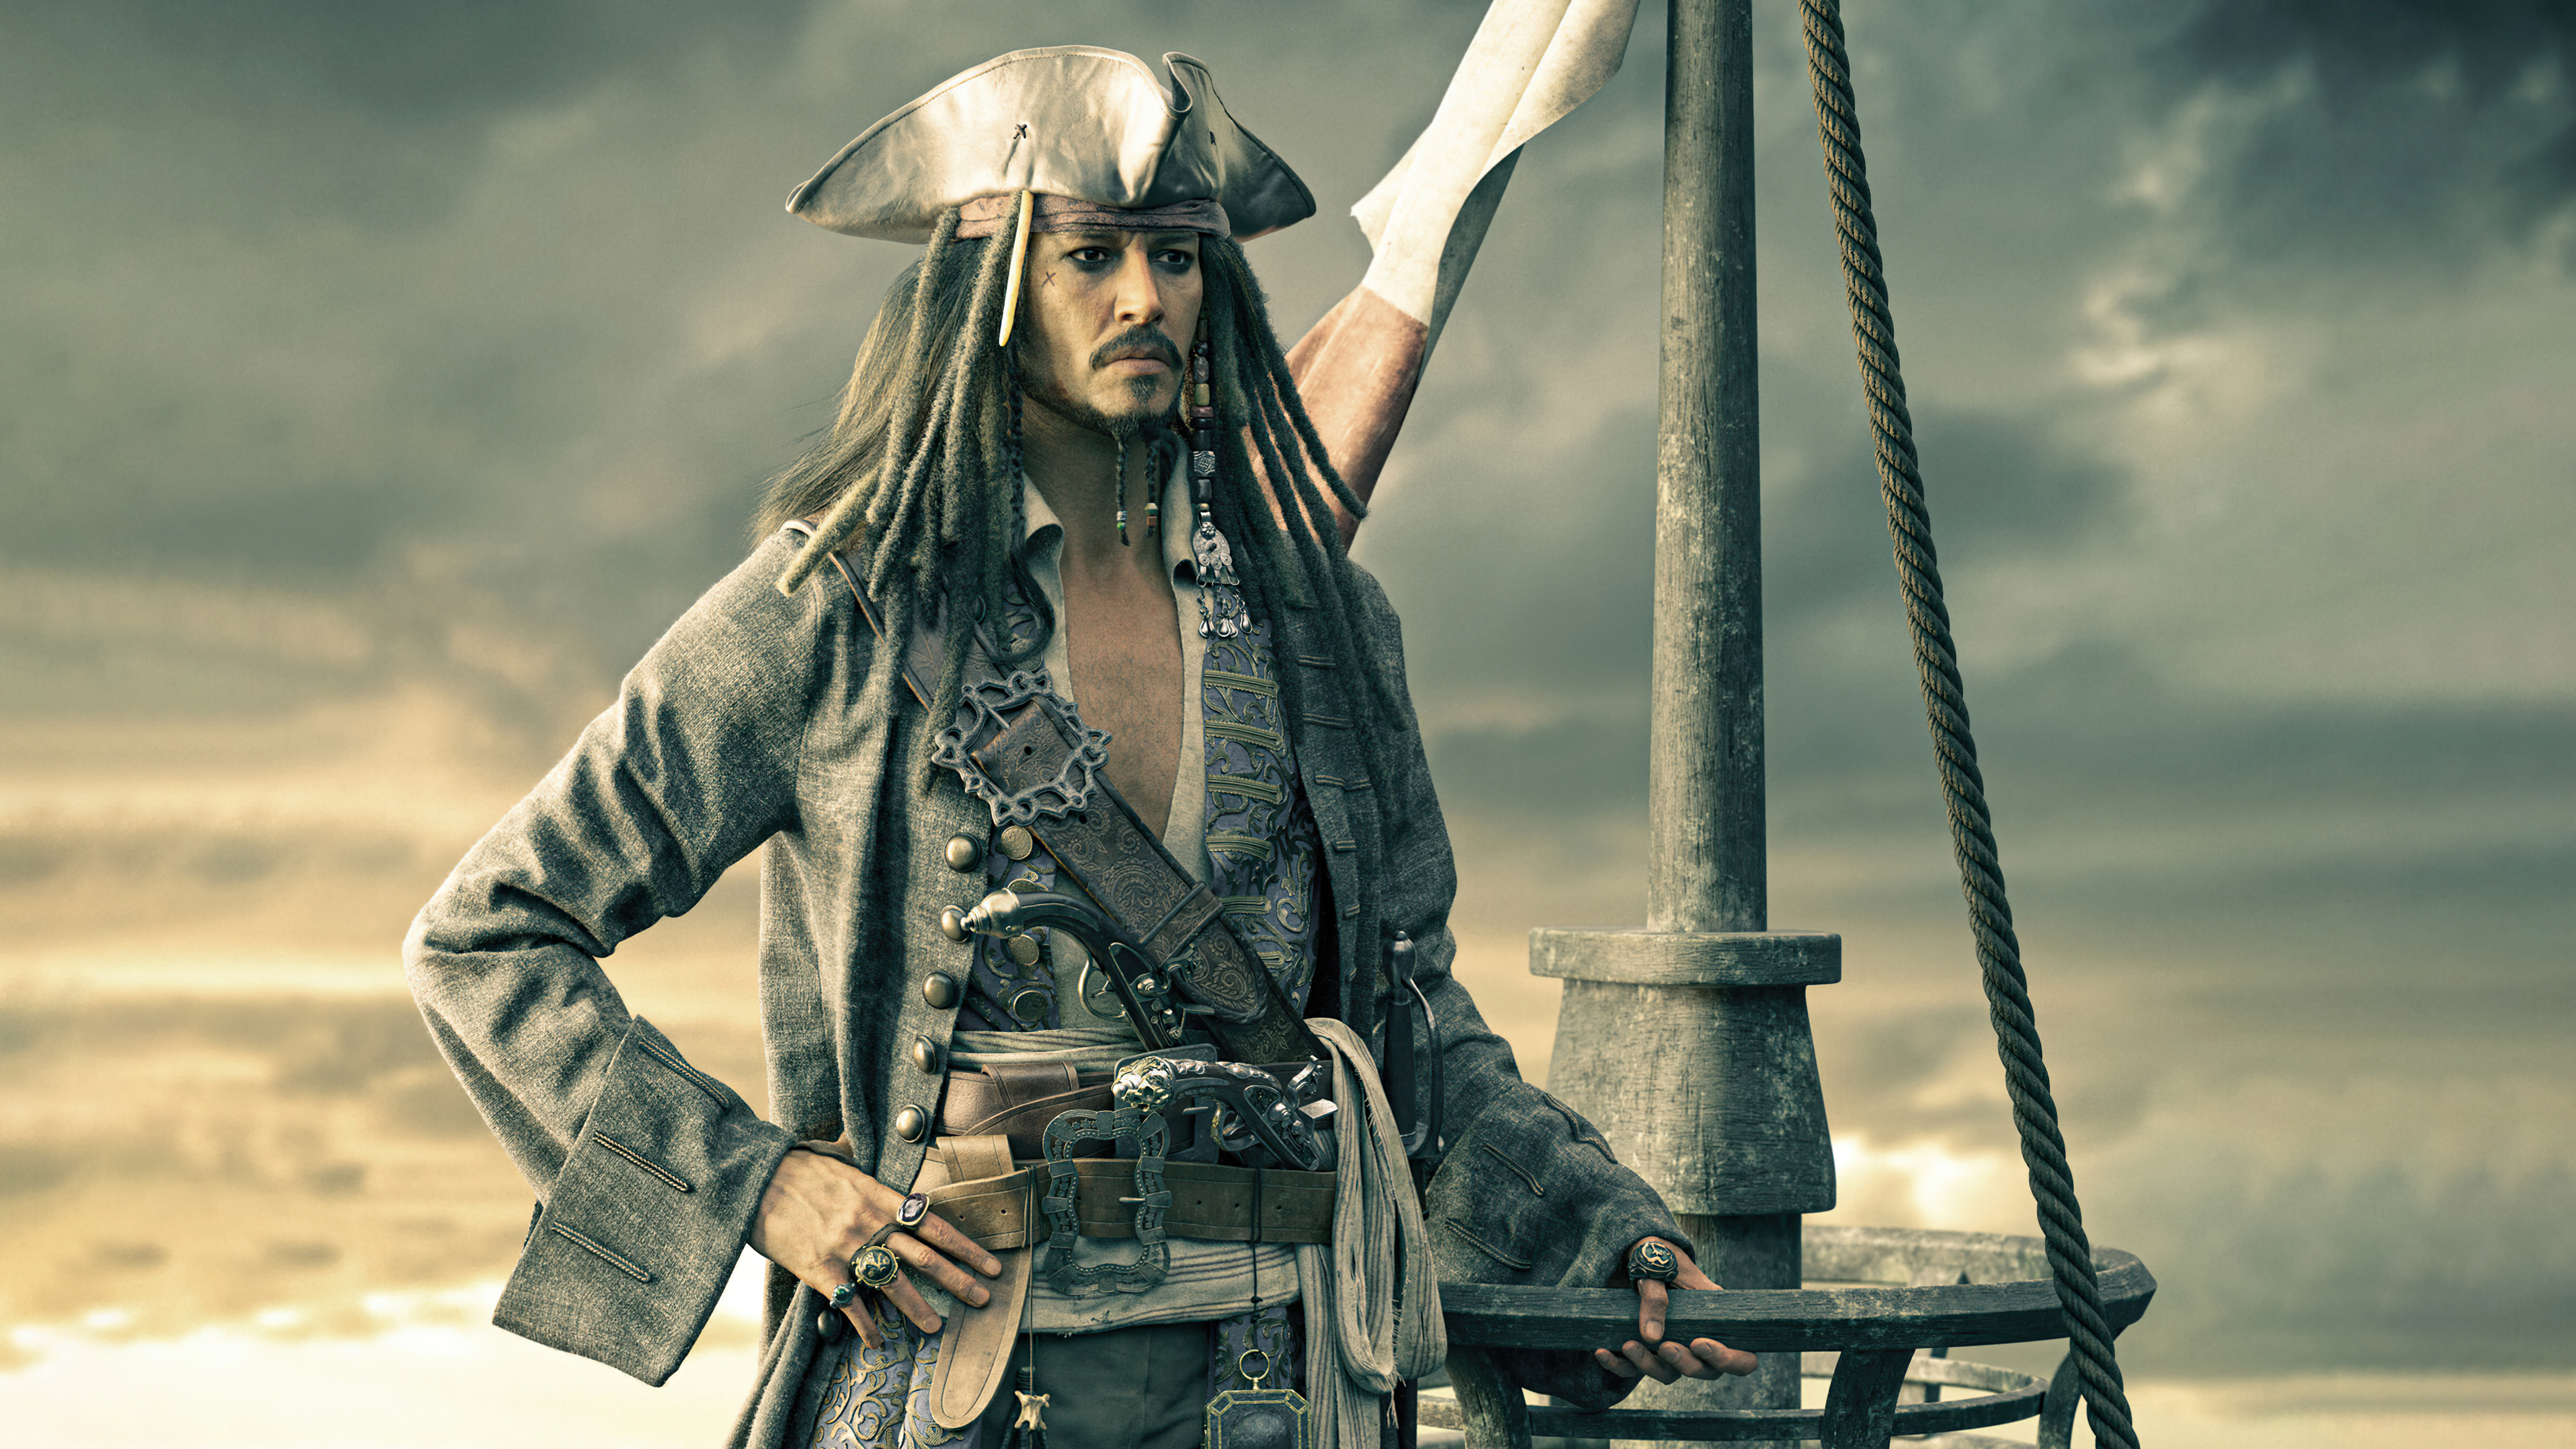 Captain Jack Sparrow Wallpaper 53 images